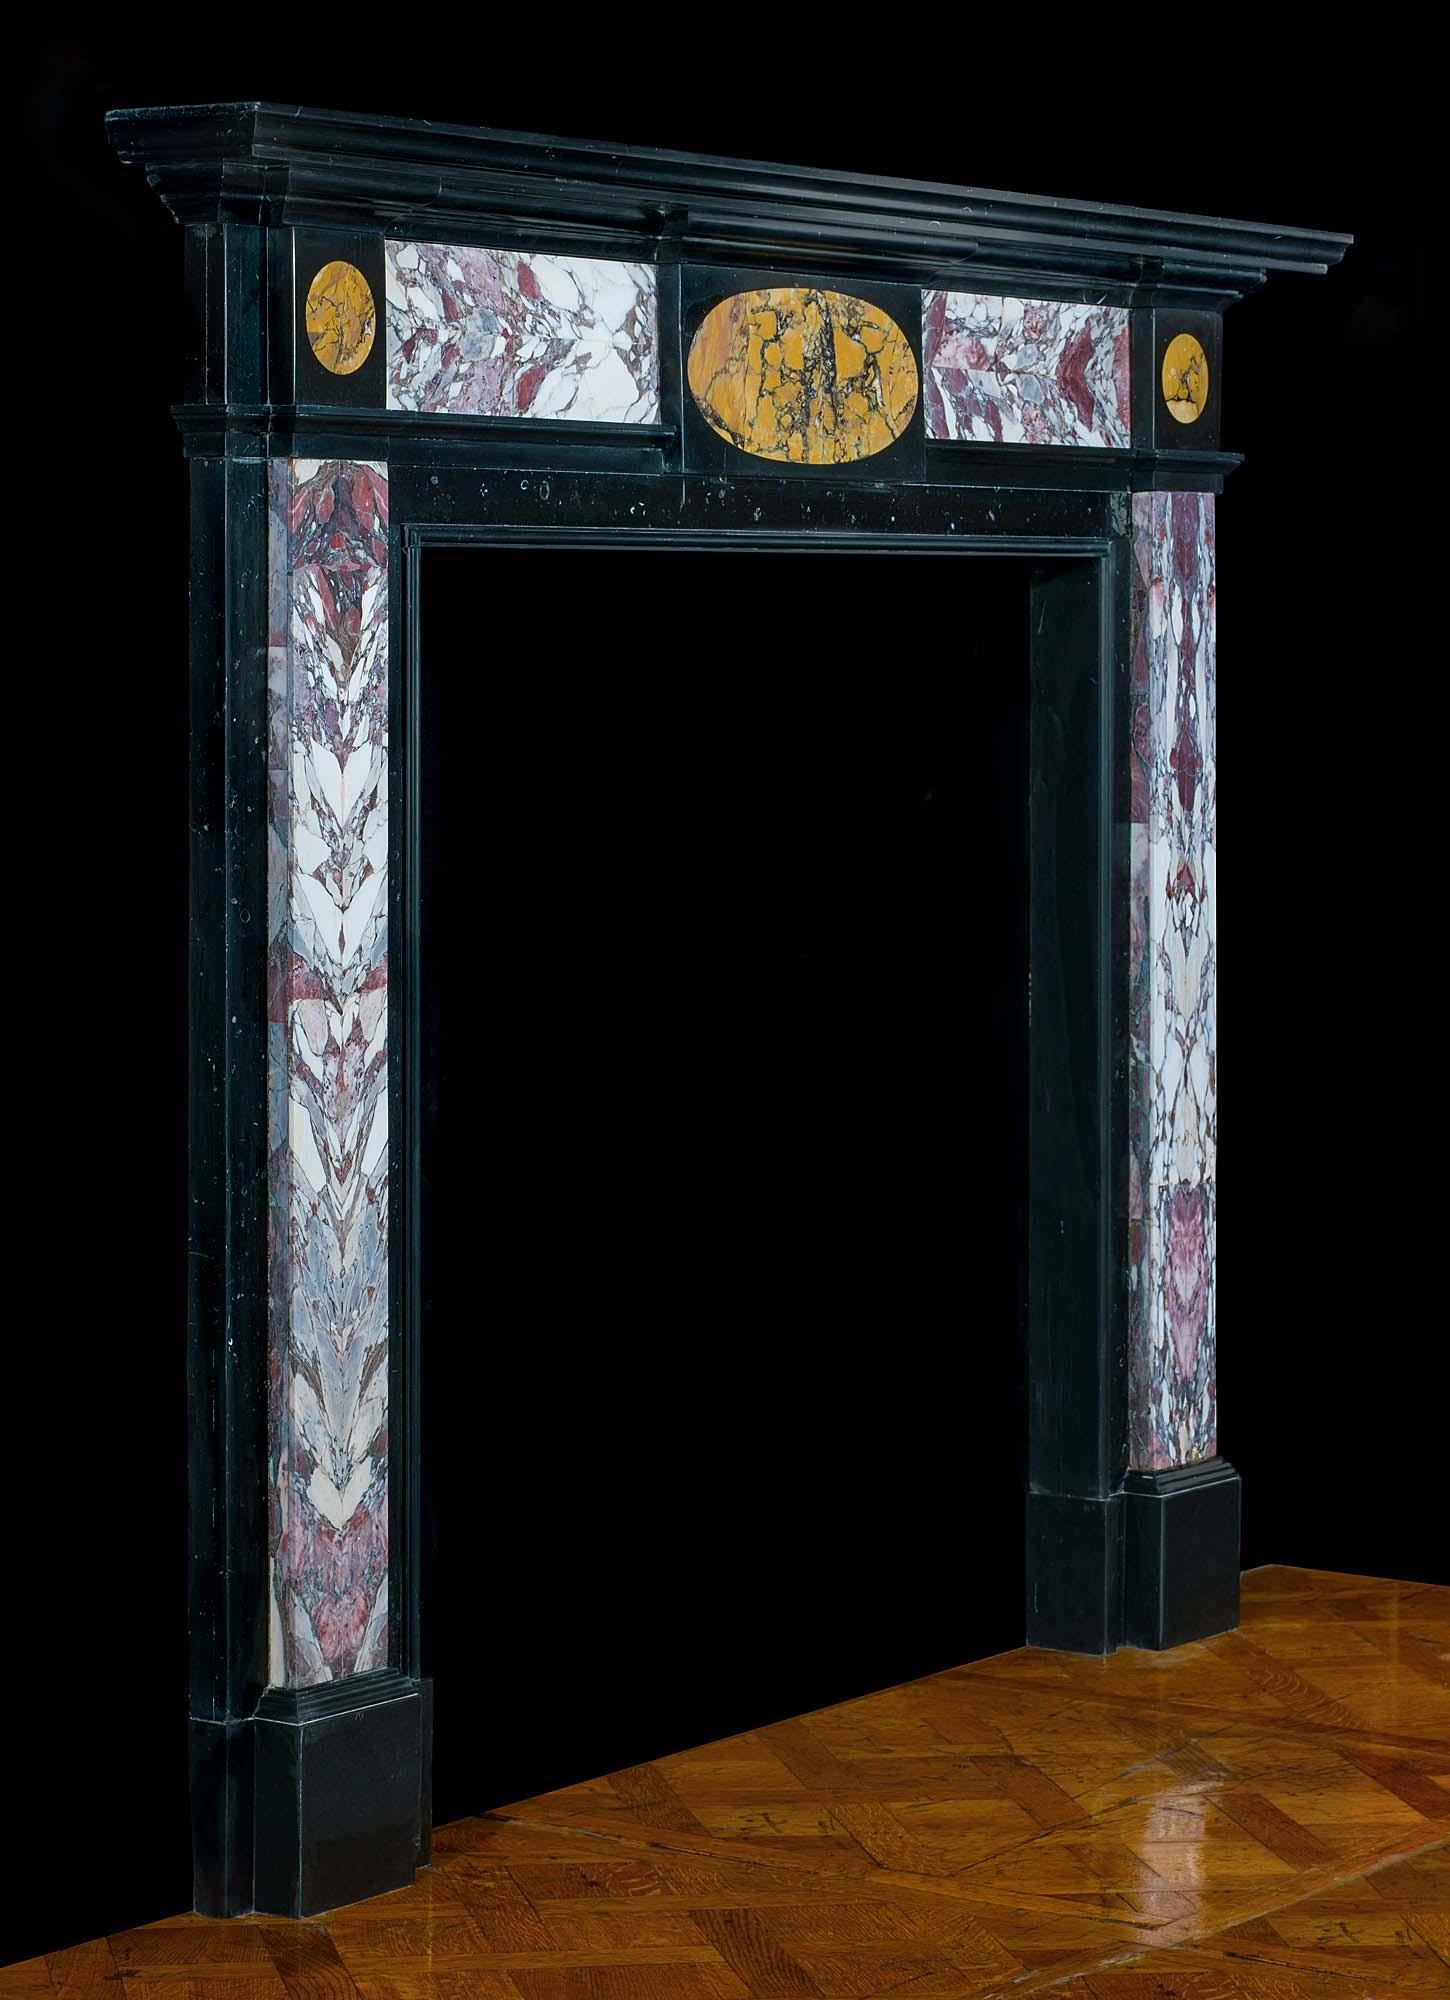 Ein sehr eleganter englischer Regency-Kamin aus schwarzem, fossilem Kilkenny-Marmor mit Intarsien aus Breche-Violette-Marmor, die wie ein Buch aufgeschnitten und geöffnet wurden, um die symmetrische Maserung zu enthüllen. Die ovale Plakette am Fries